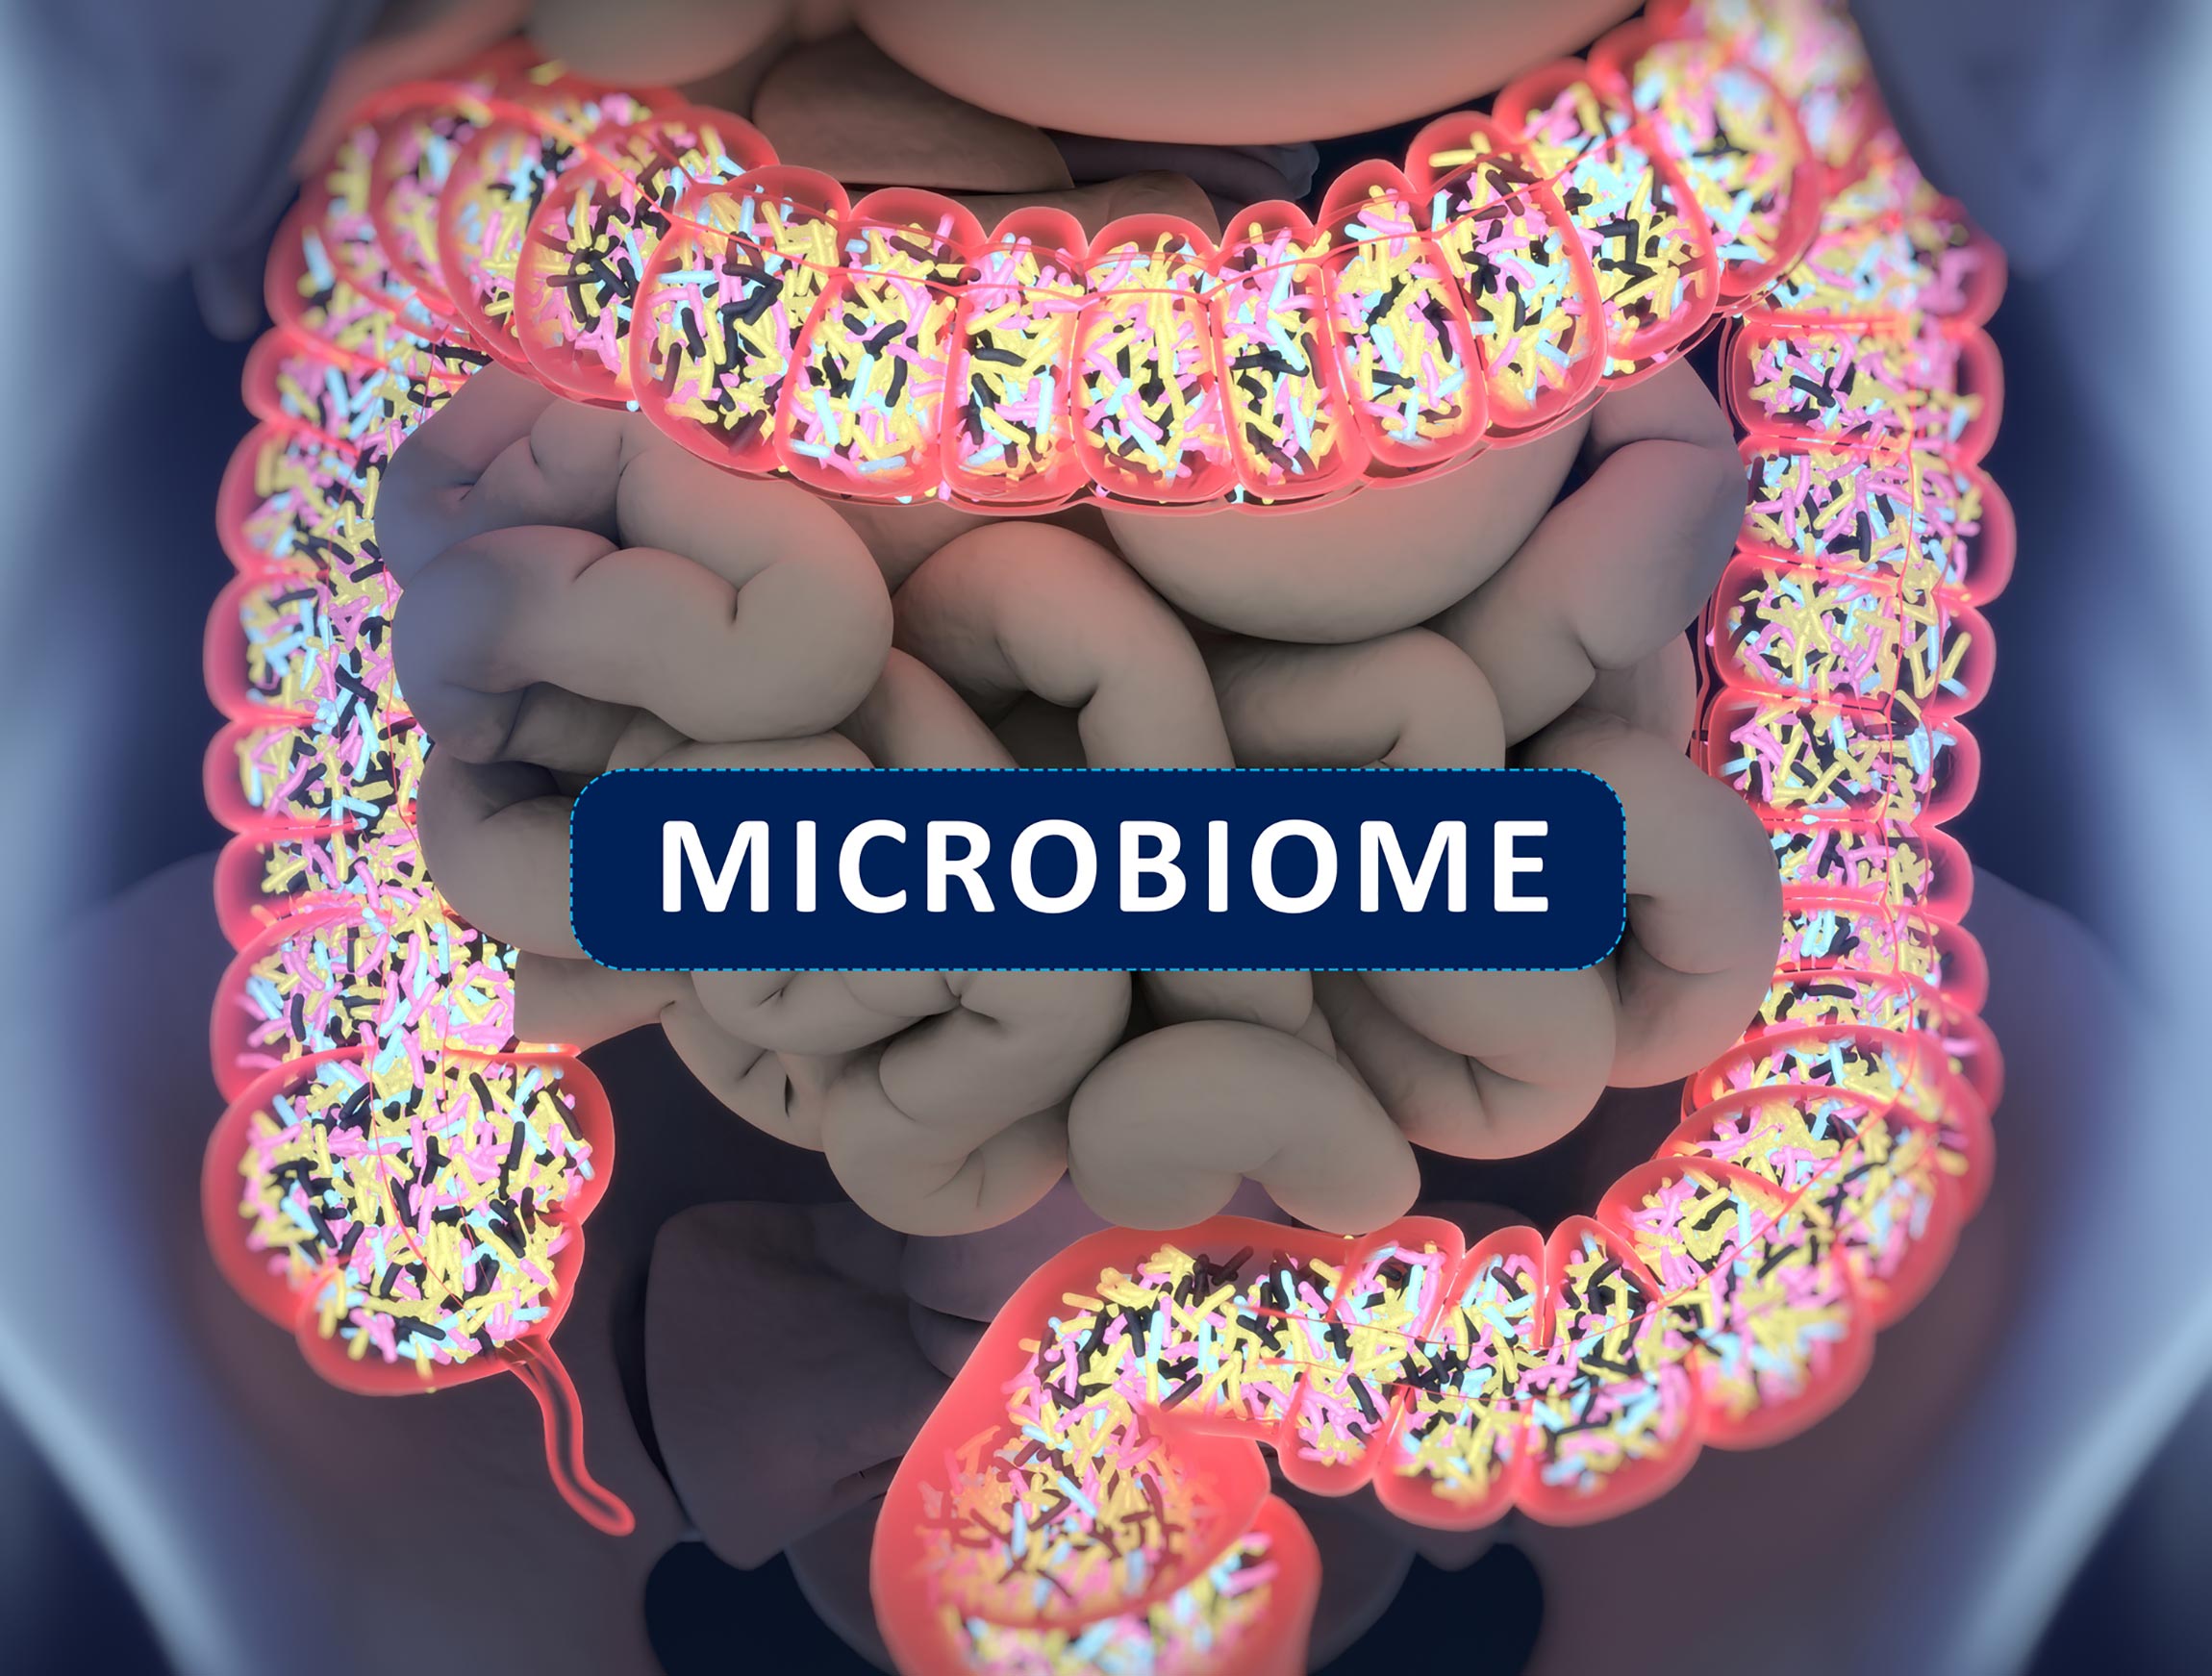 Gut health and human microbiome